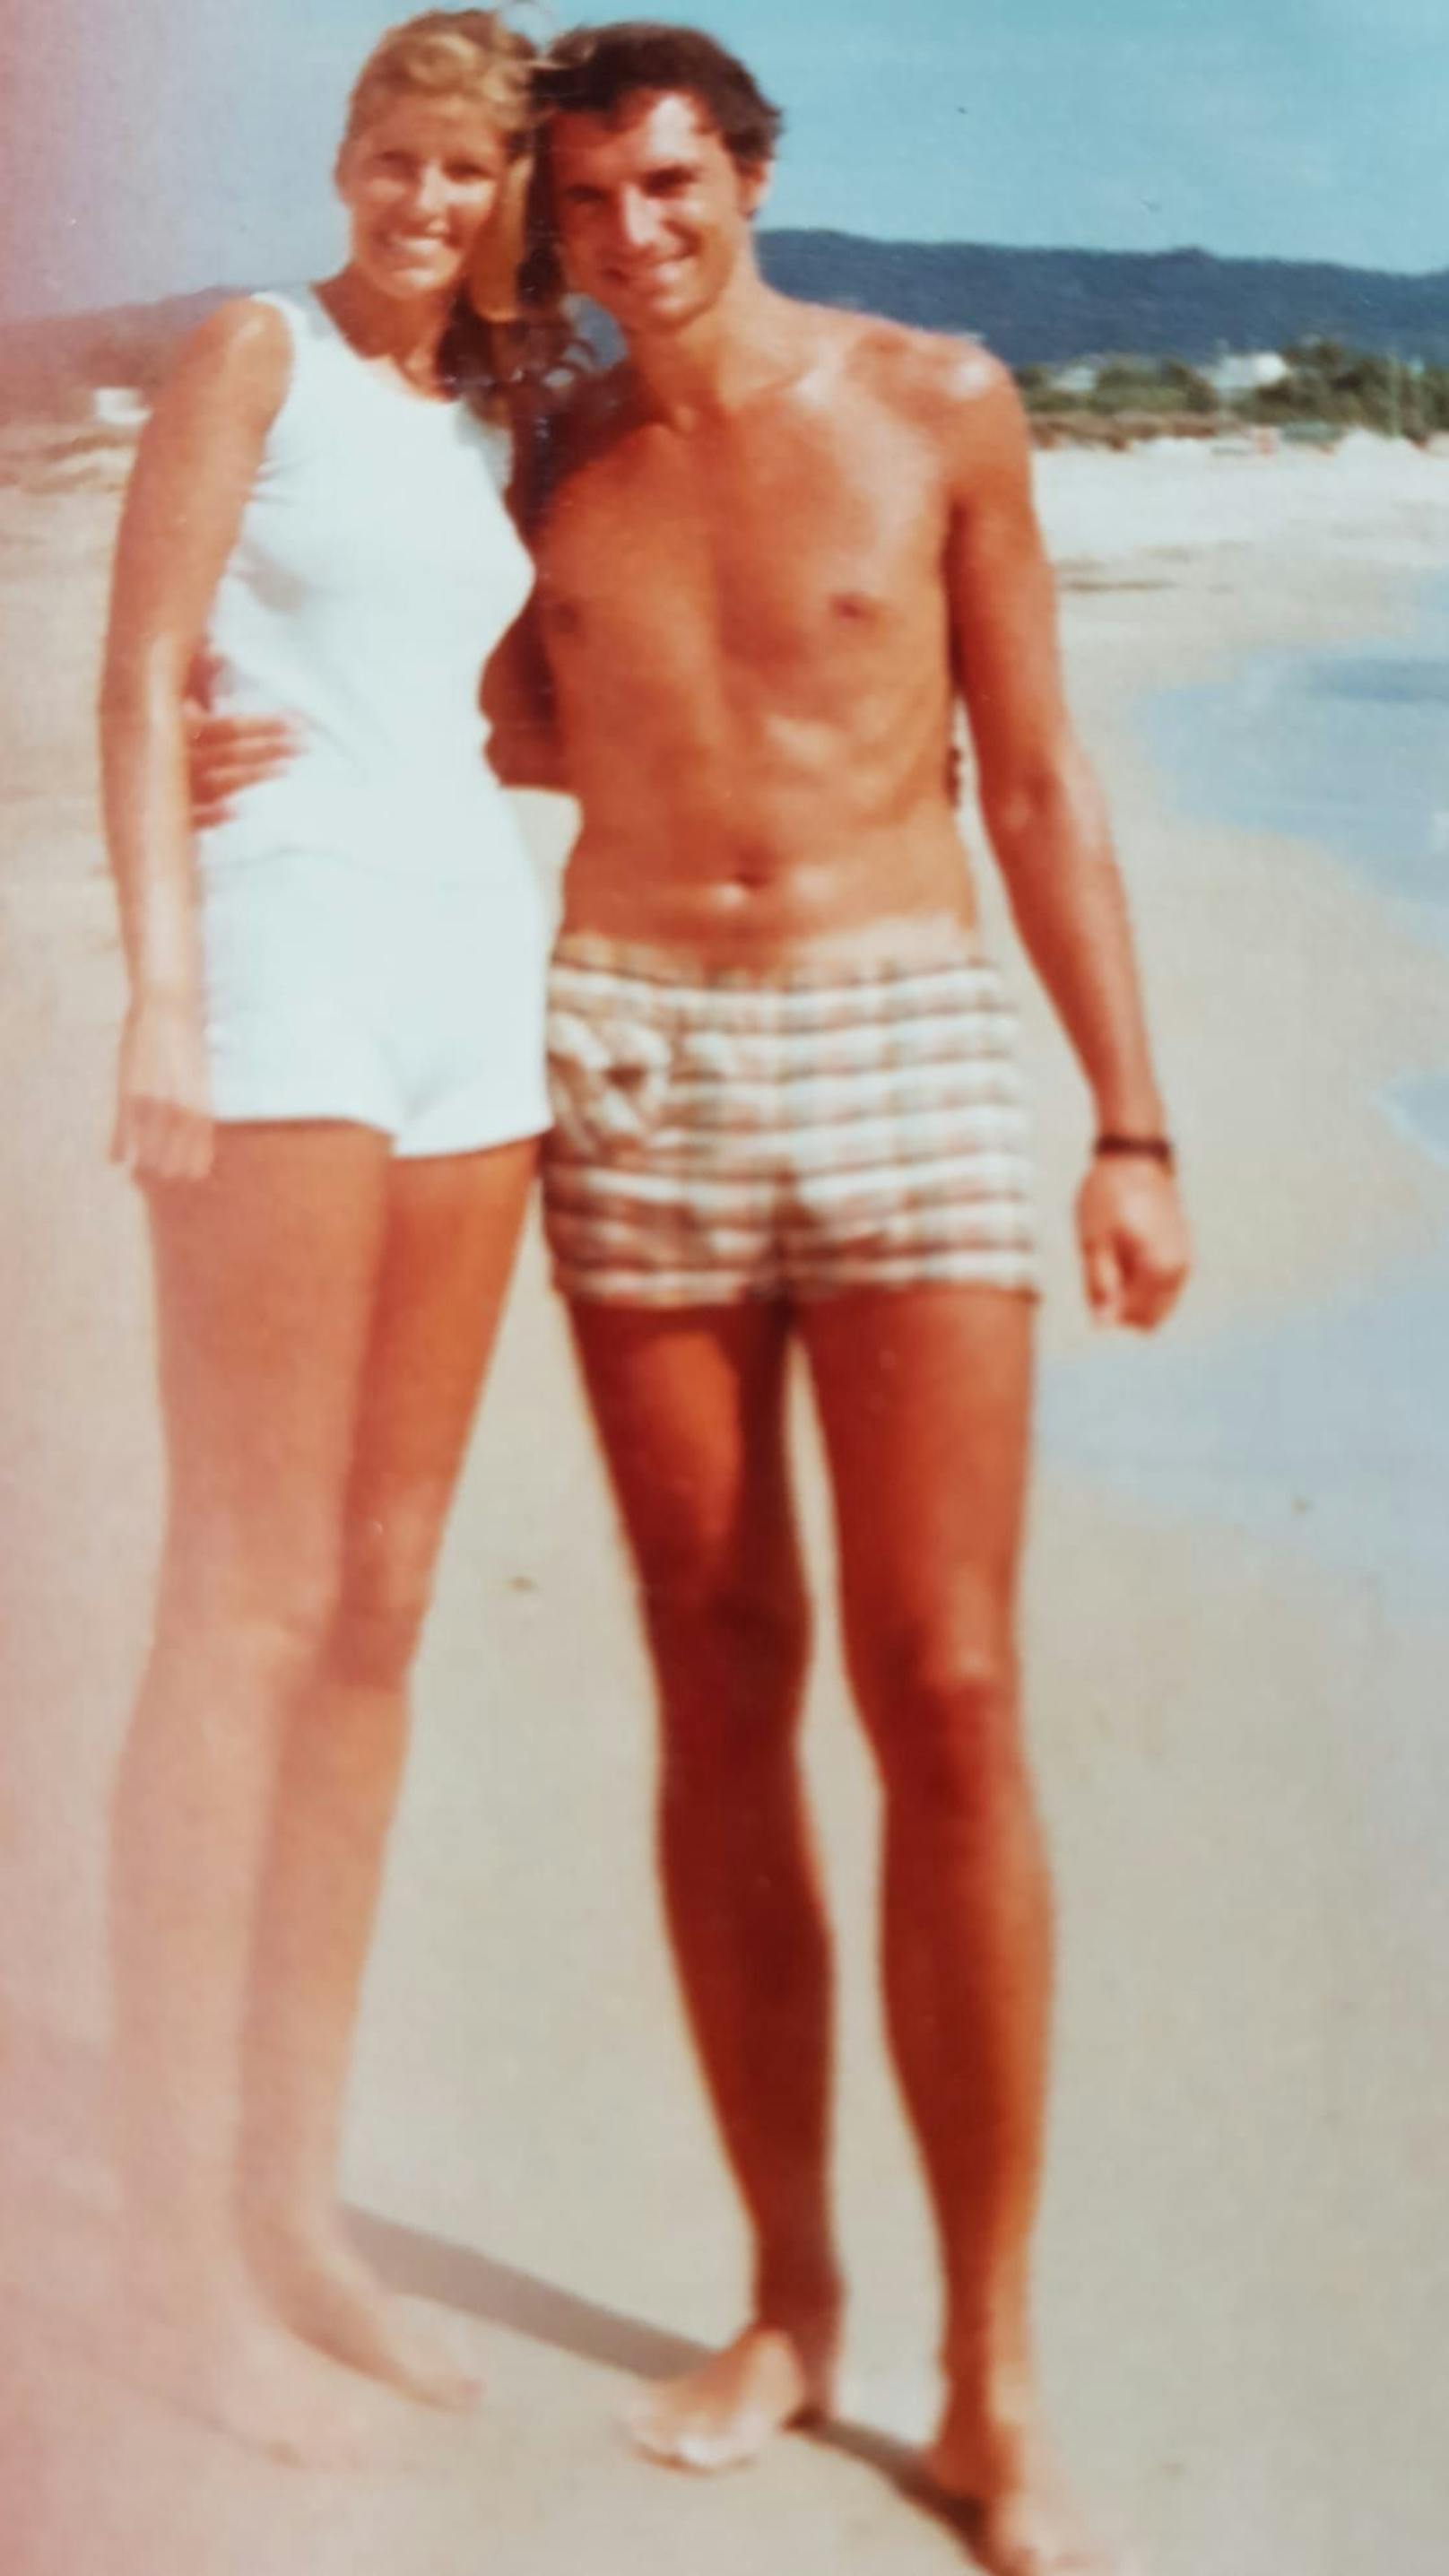 Mateschitz mit seiner Ursula kurz nach der Verlobung in Tunesien. Sie meint: "Der Urlaub war eine Tortur"